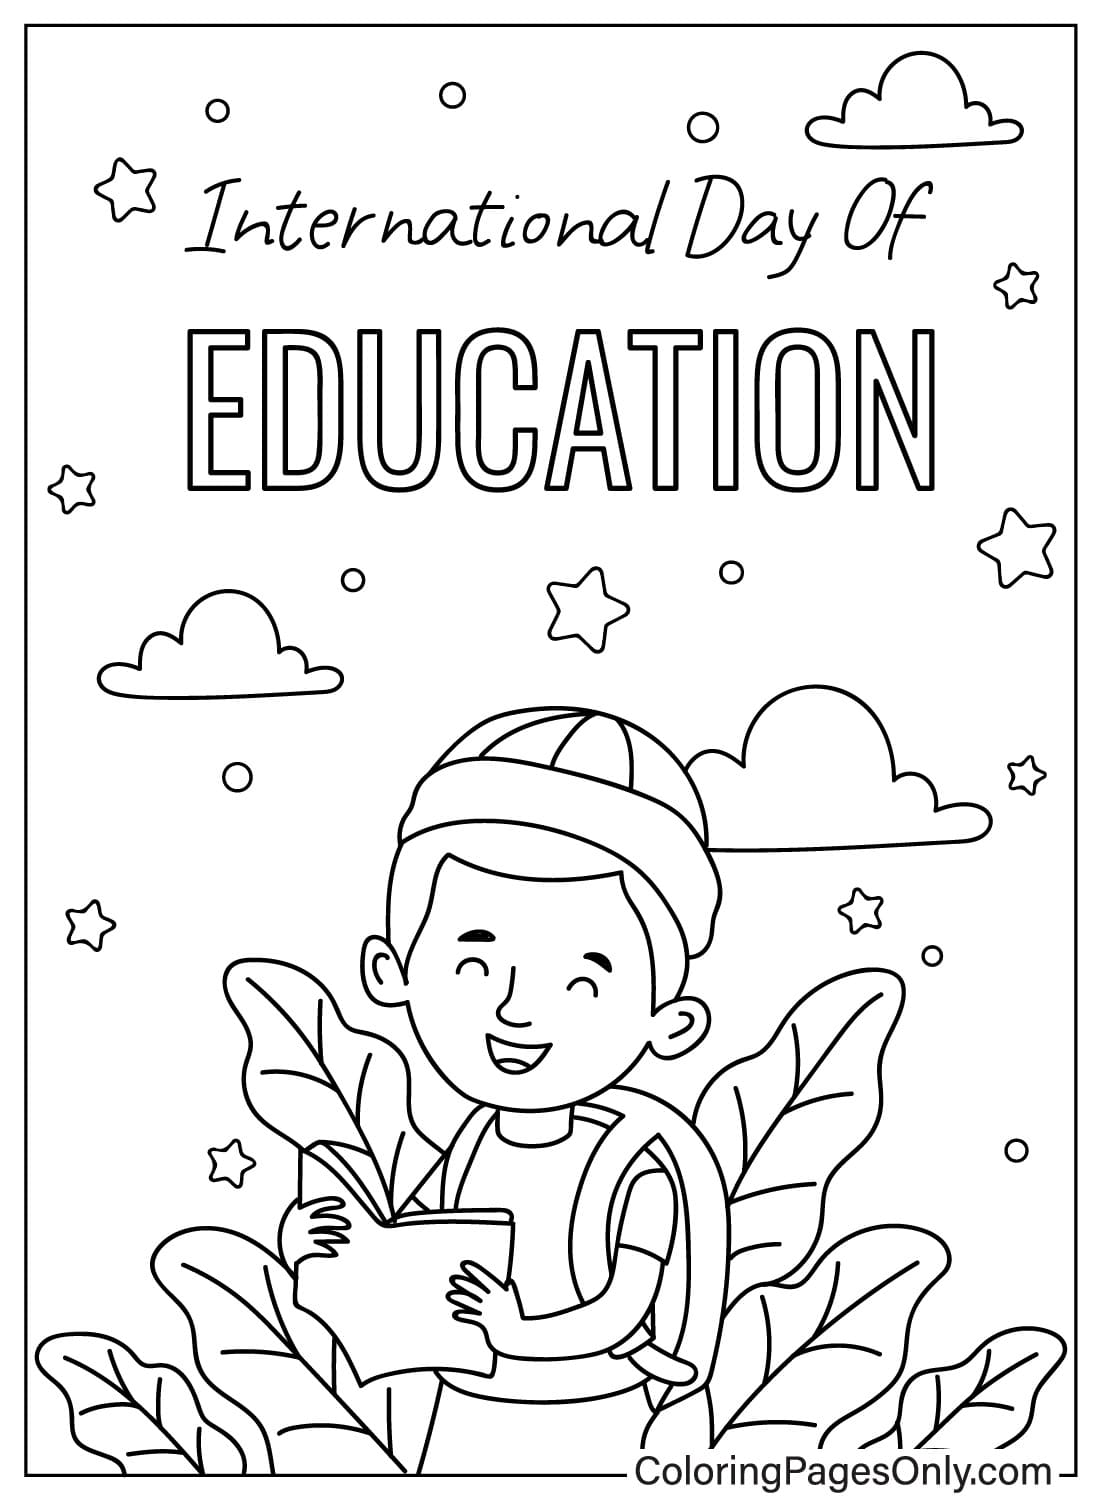 国际教育日彩页来自国际教育日